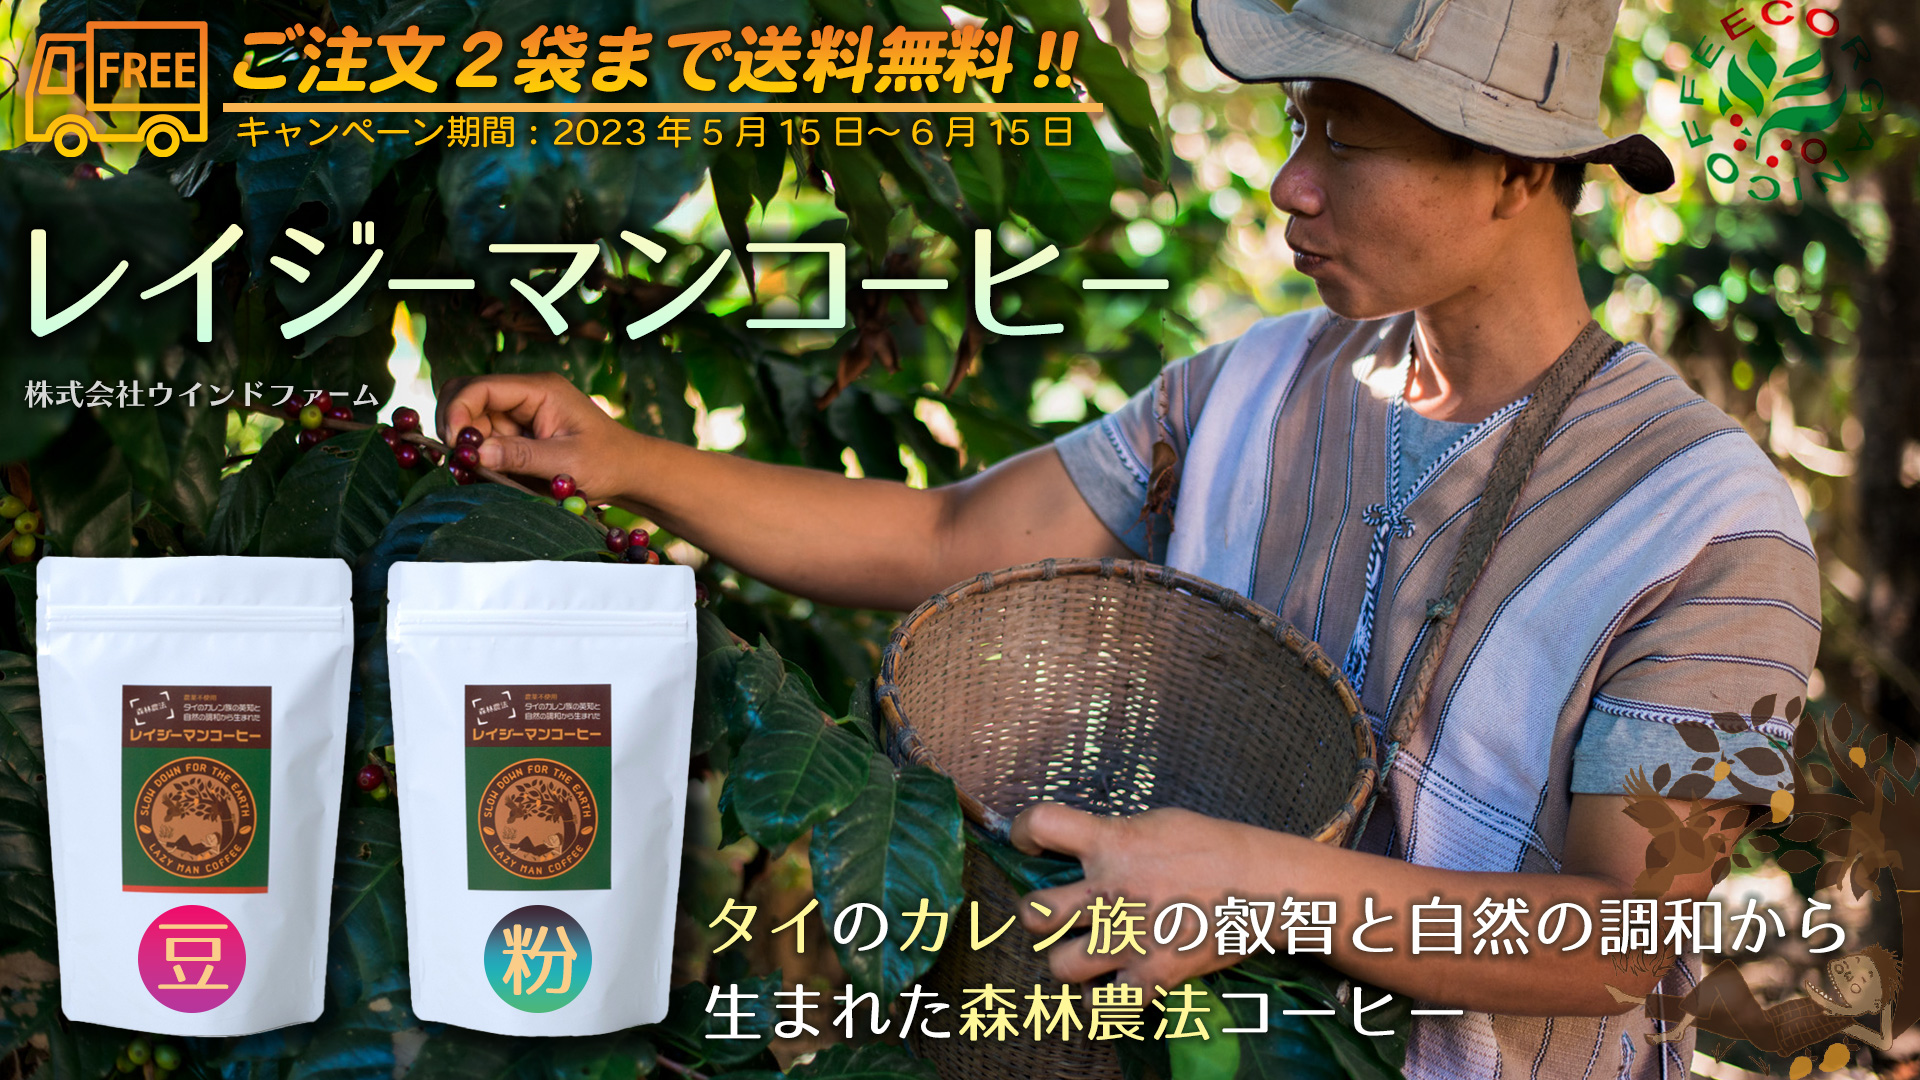 タイ・カレン族の叡智と自然の調和から生まれた農薬不使用・森林農法コーヒー「レイジーマンコーヒー」